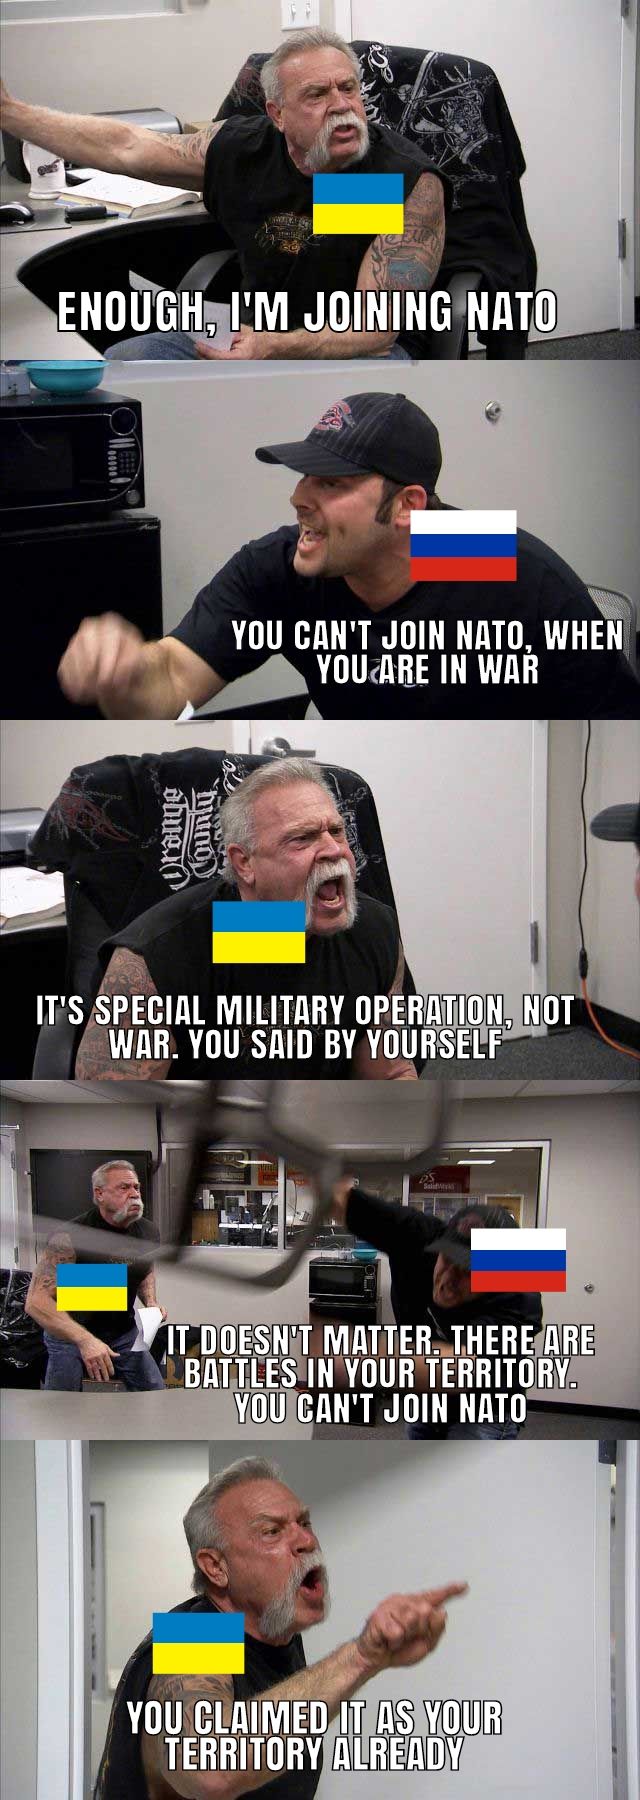 Ukraine joining NATO